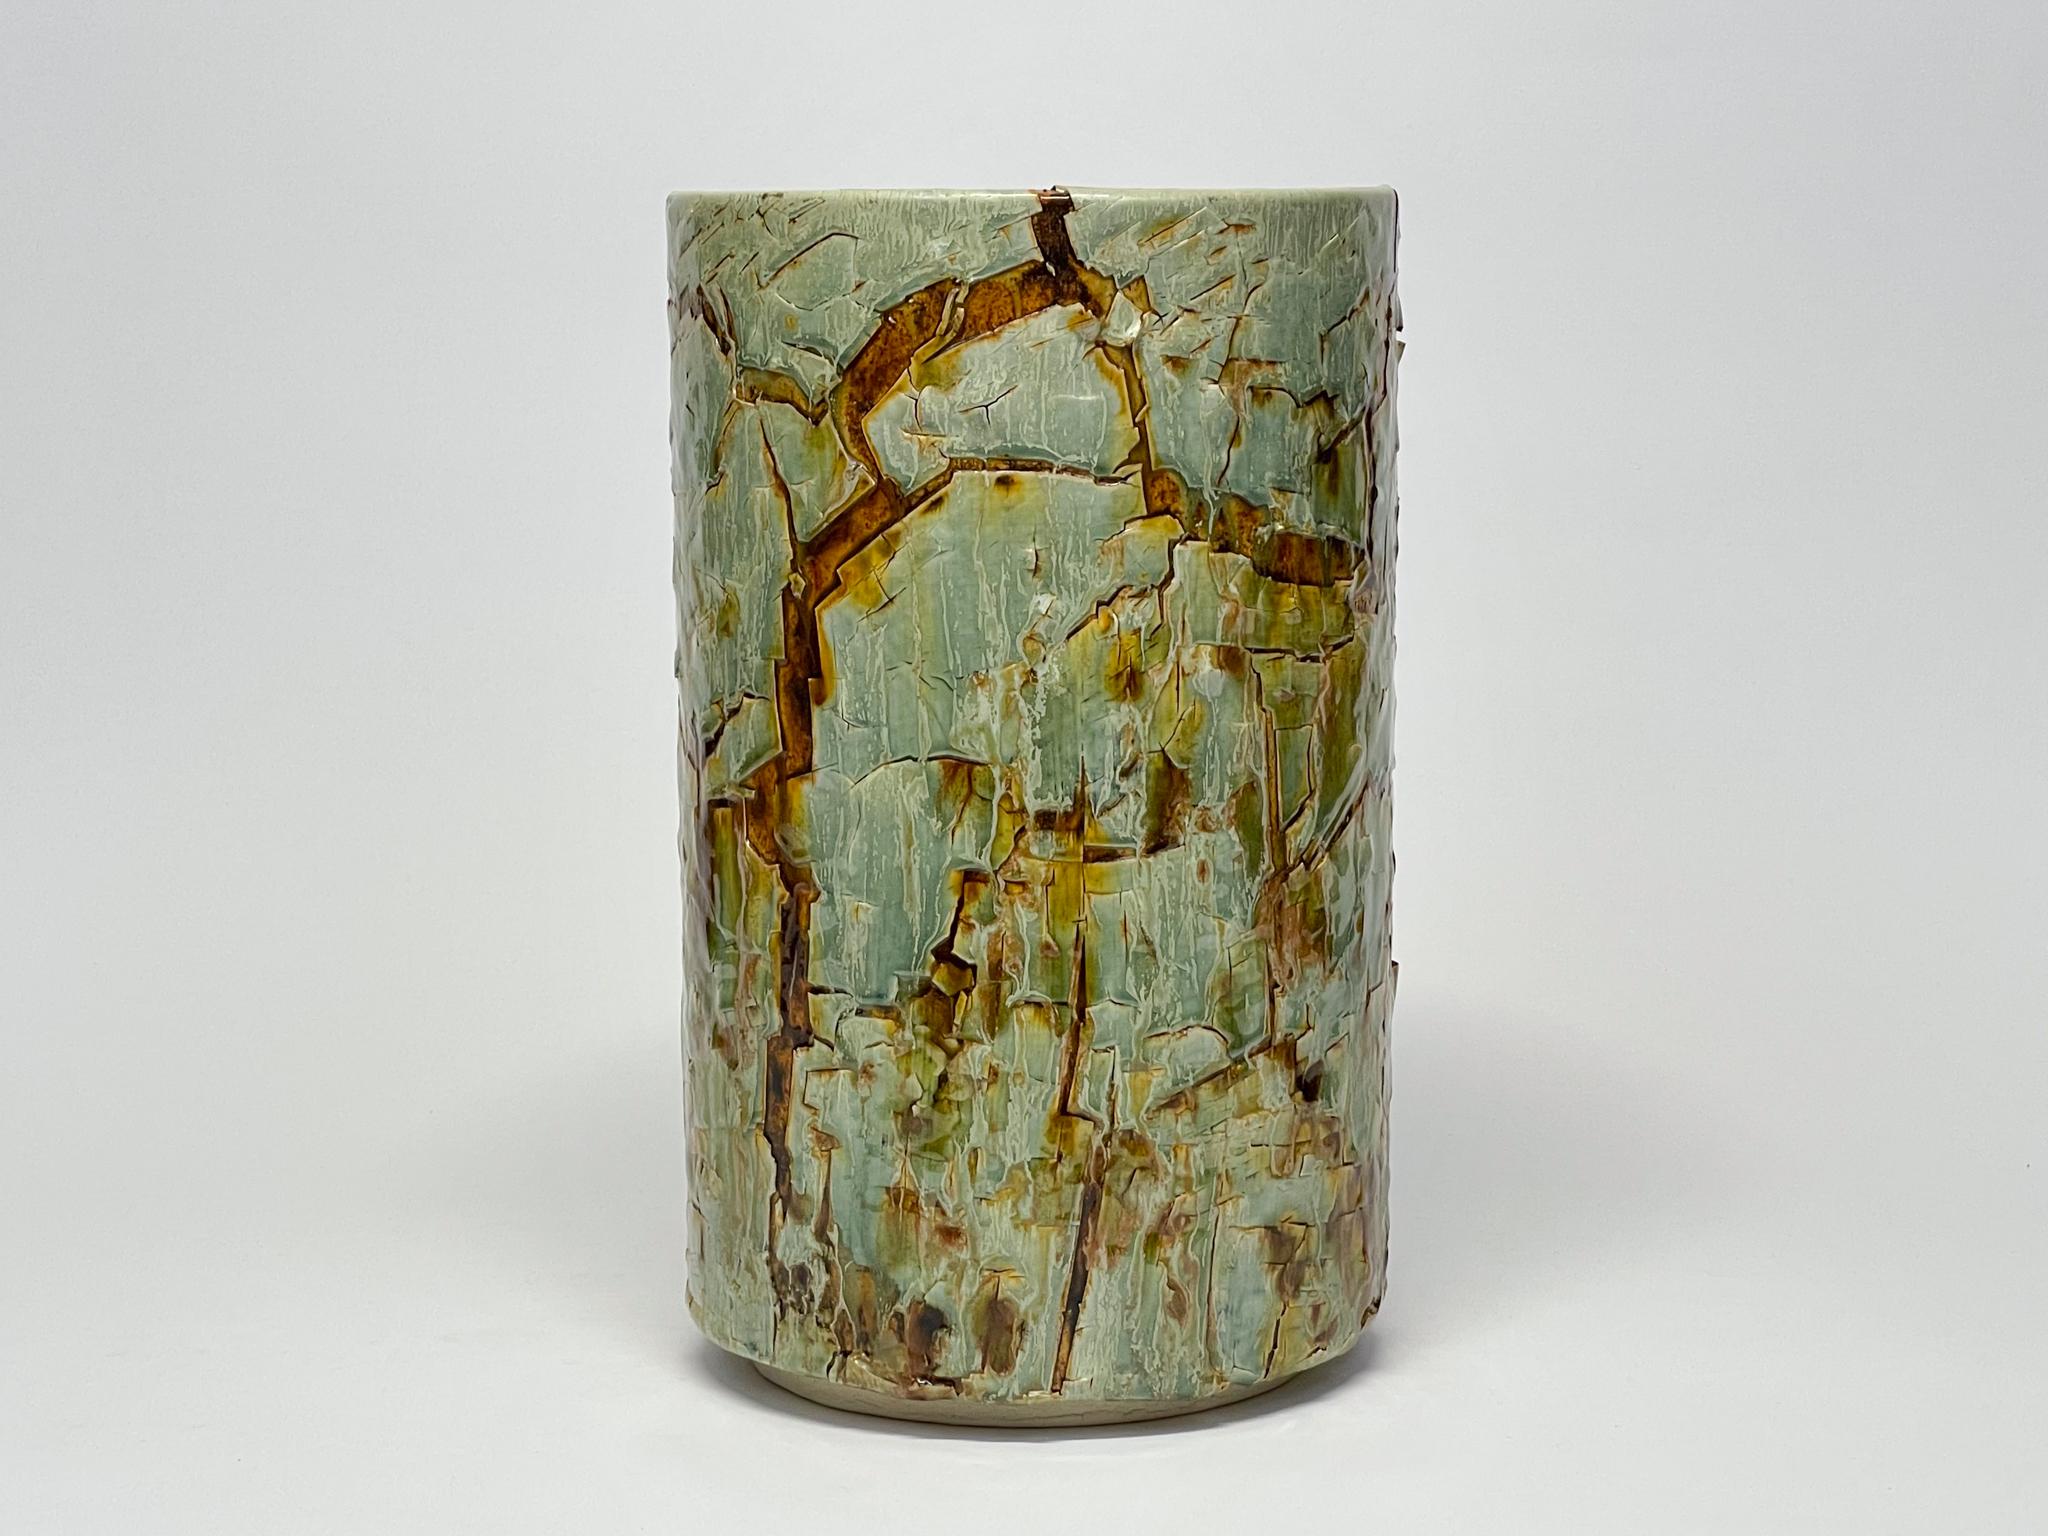 Glazed Ceramic Vessel Cylinder Sculpture by William Edwards    For Sale